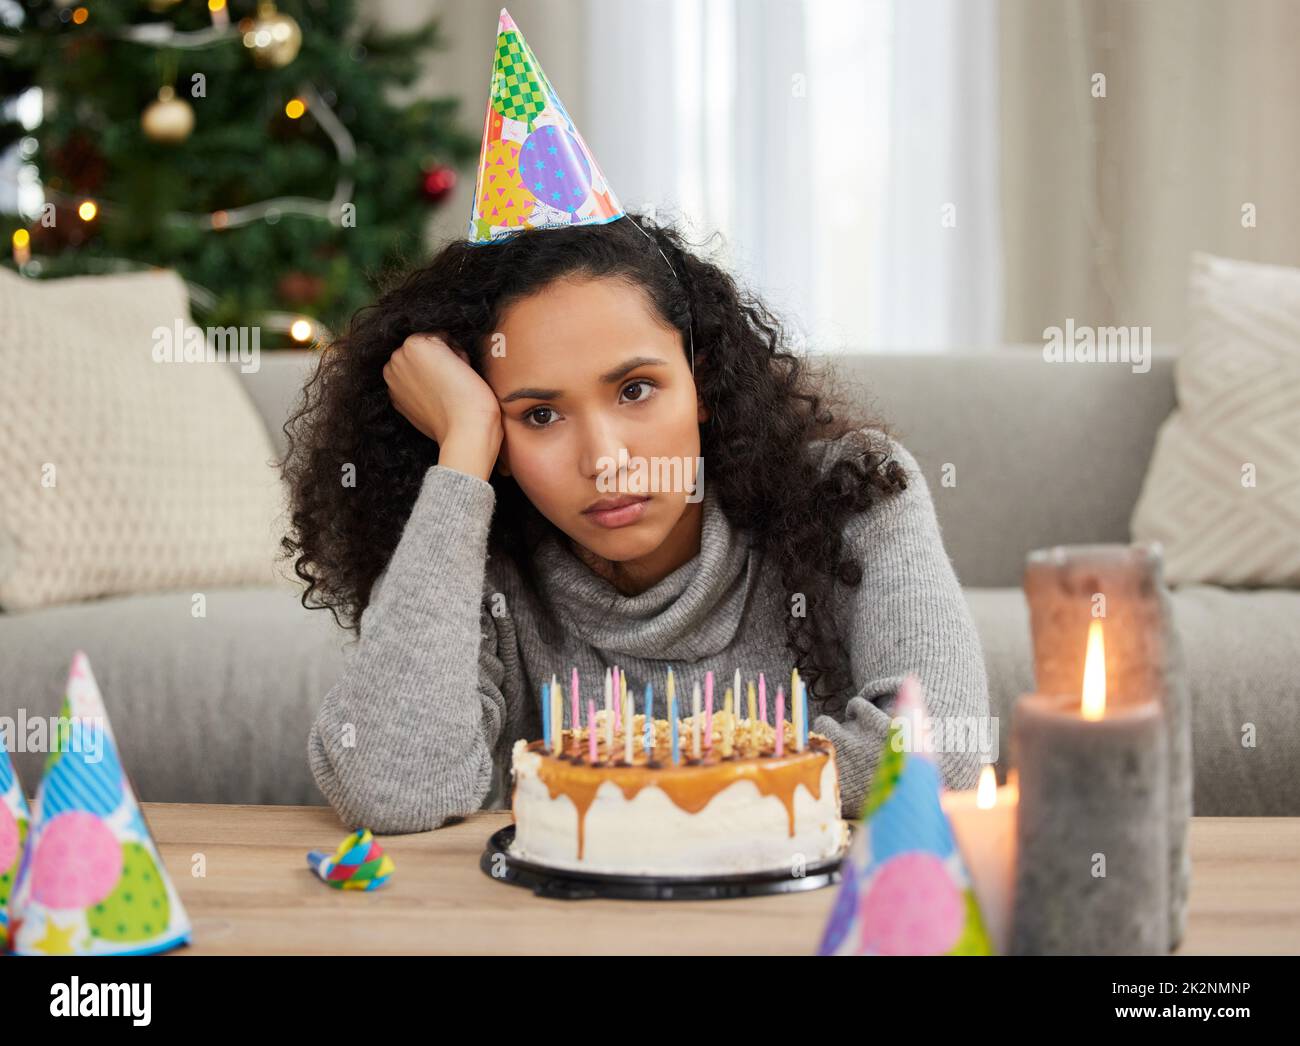 Dies sollte mein besonderer Tag sein Aufnahme einer jungen Frau, die unglücklich aussieht, während sie ihren Geburtstag allein zu Hause feiert. Stockfoto